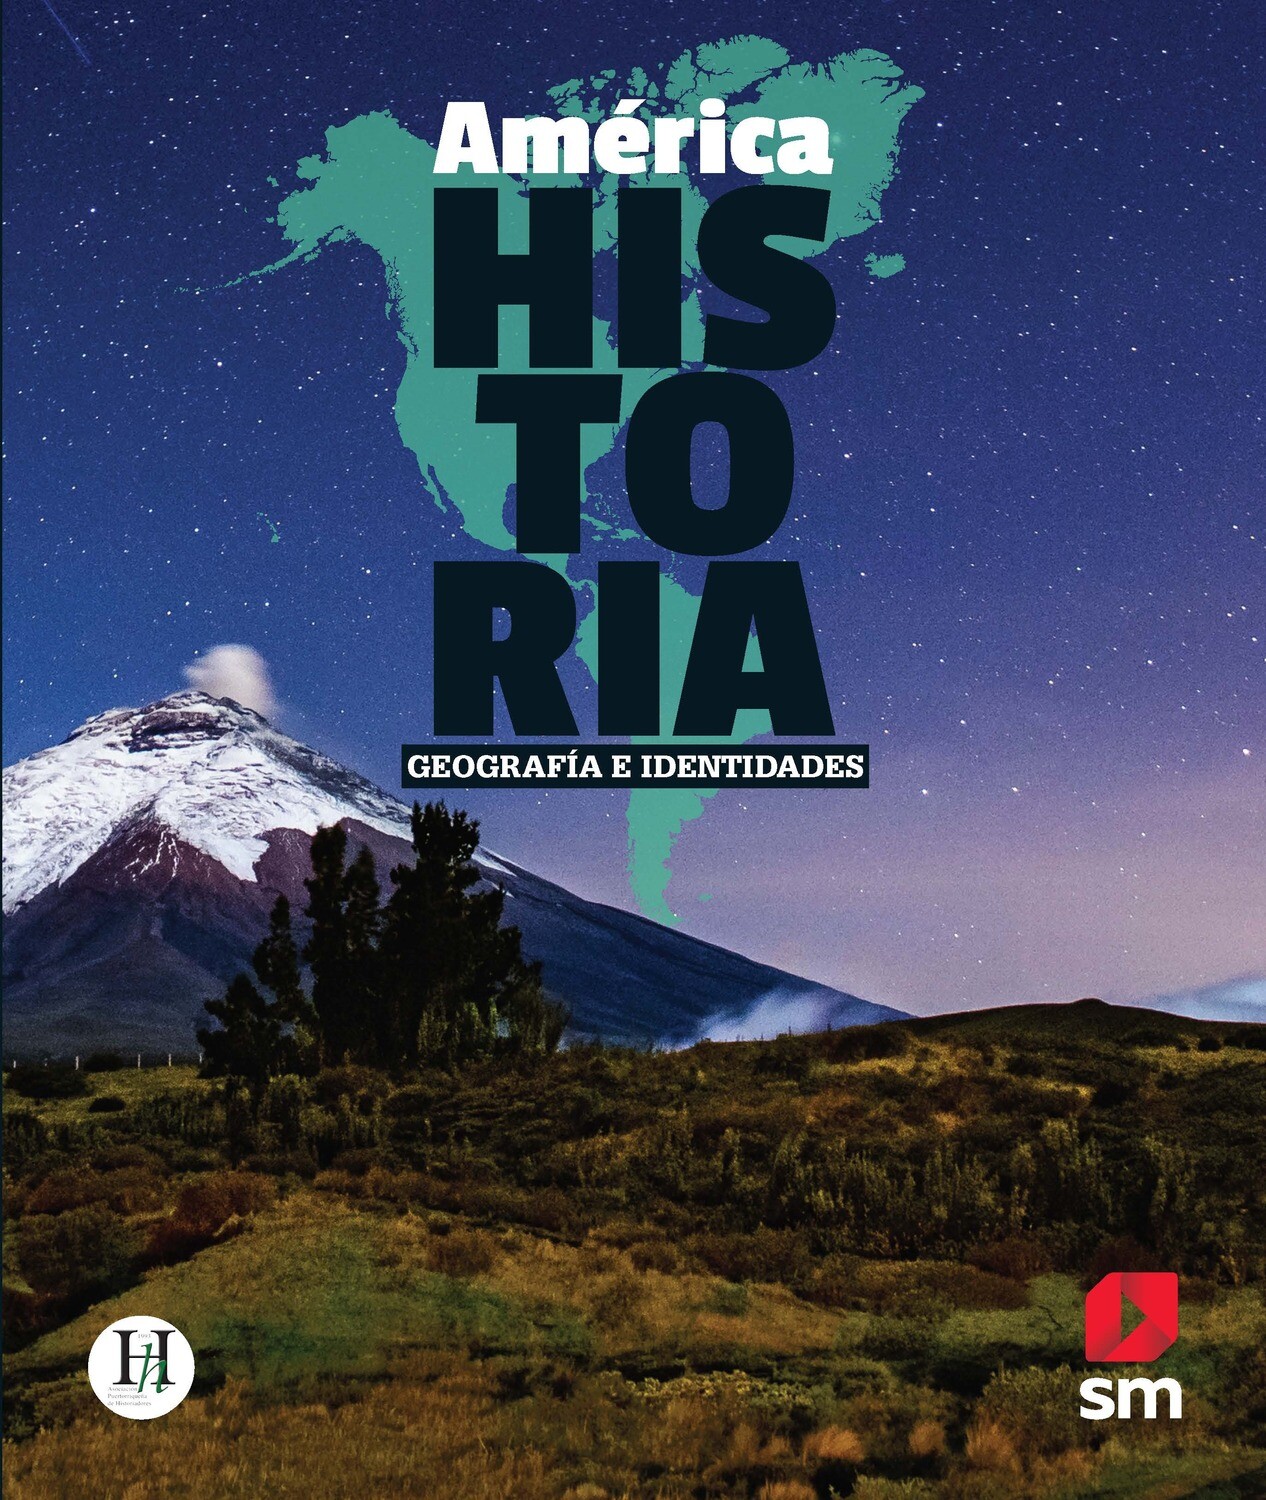 EIGHTH GRADE - AMERICA: HISTORIA, GEOGRAFIA E IDENTIDADES TEXTO Y ACCESO DIGITAL - SM - 2022 - ISBN 9781644865415